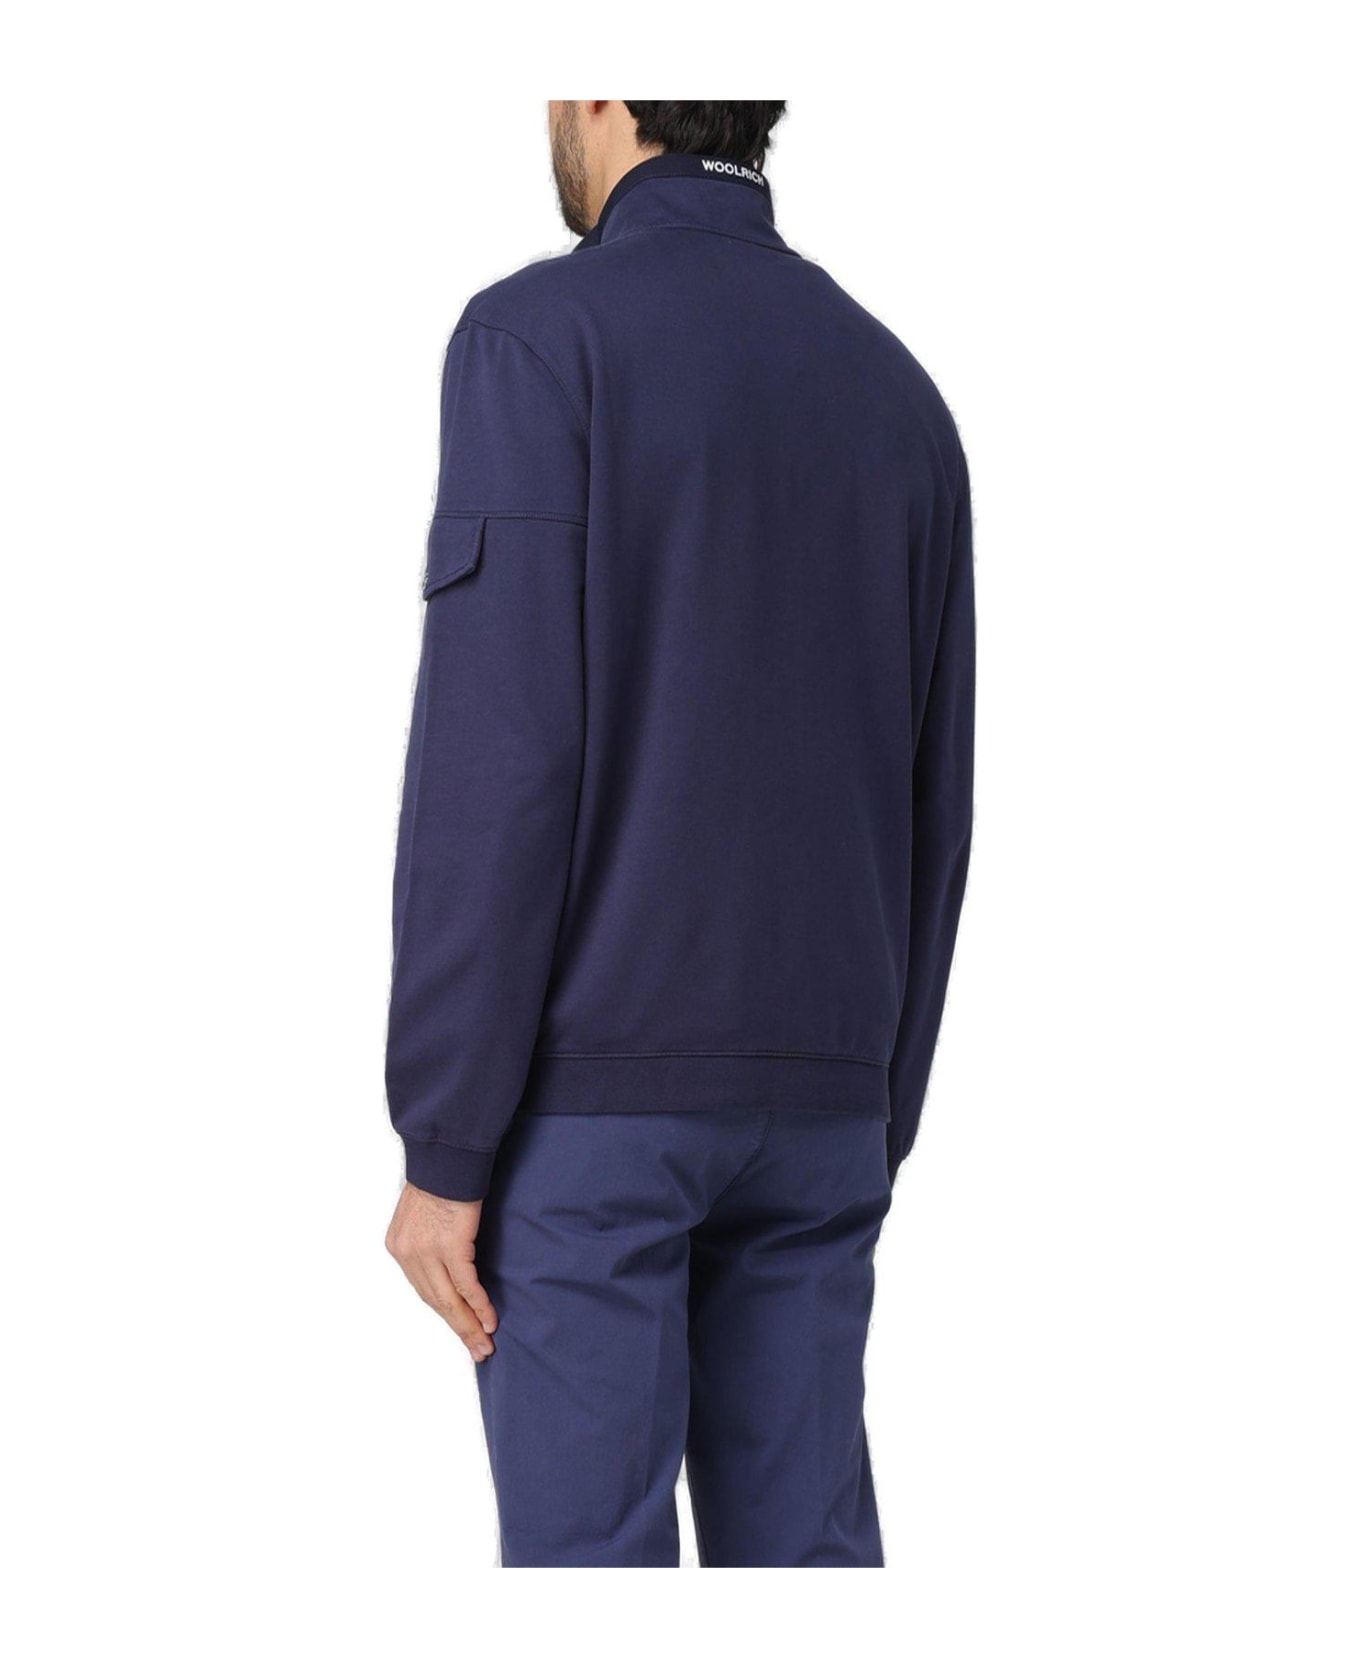 Woolrich Long-sleeved Zip-up Sweatshirt